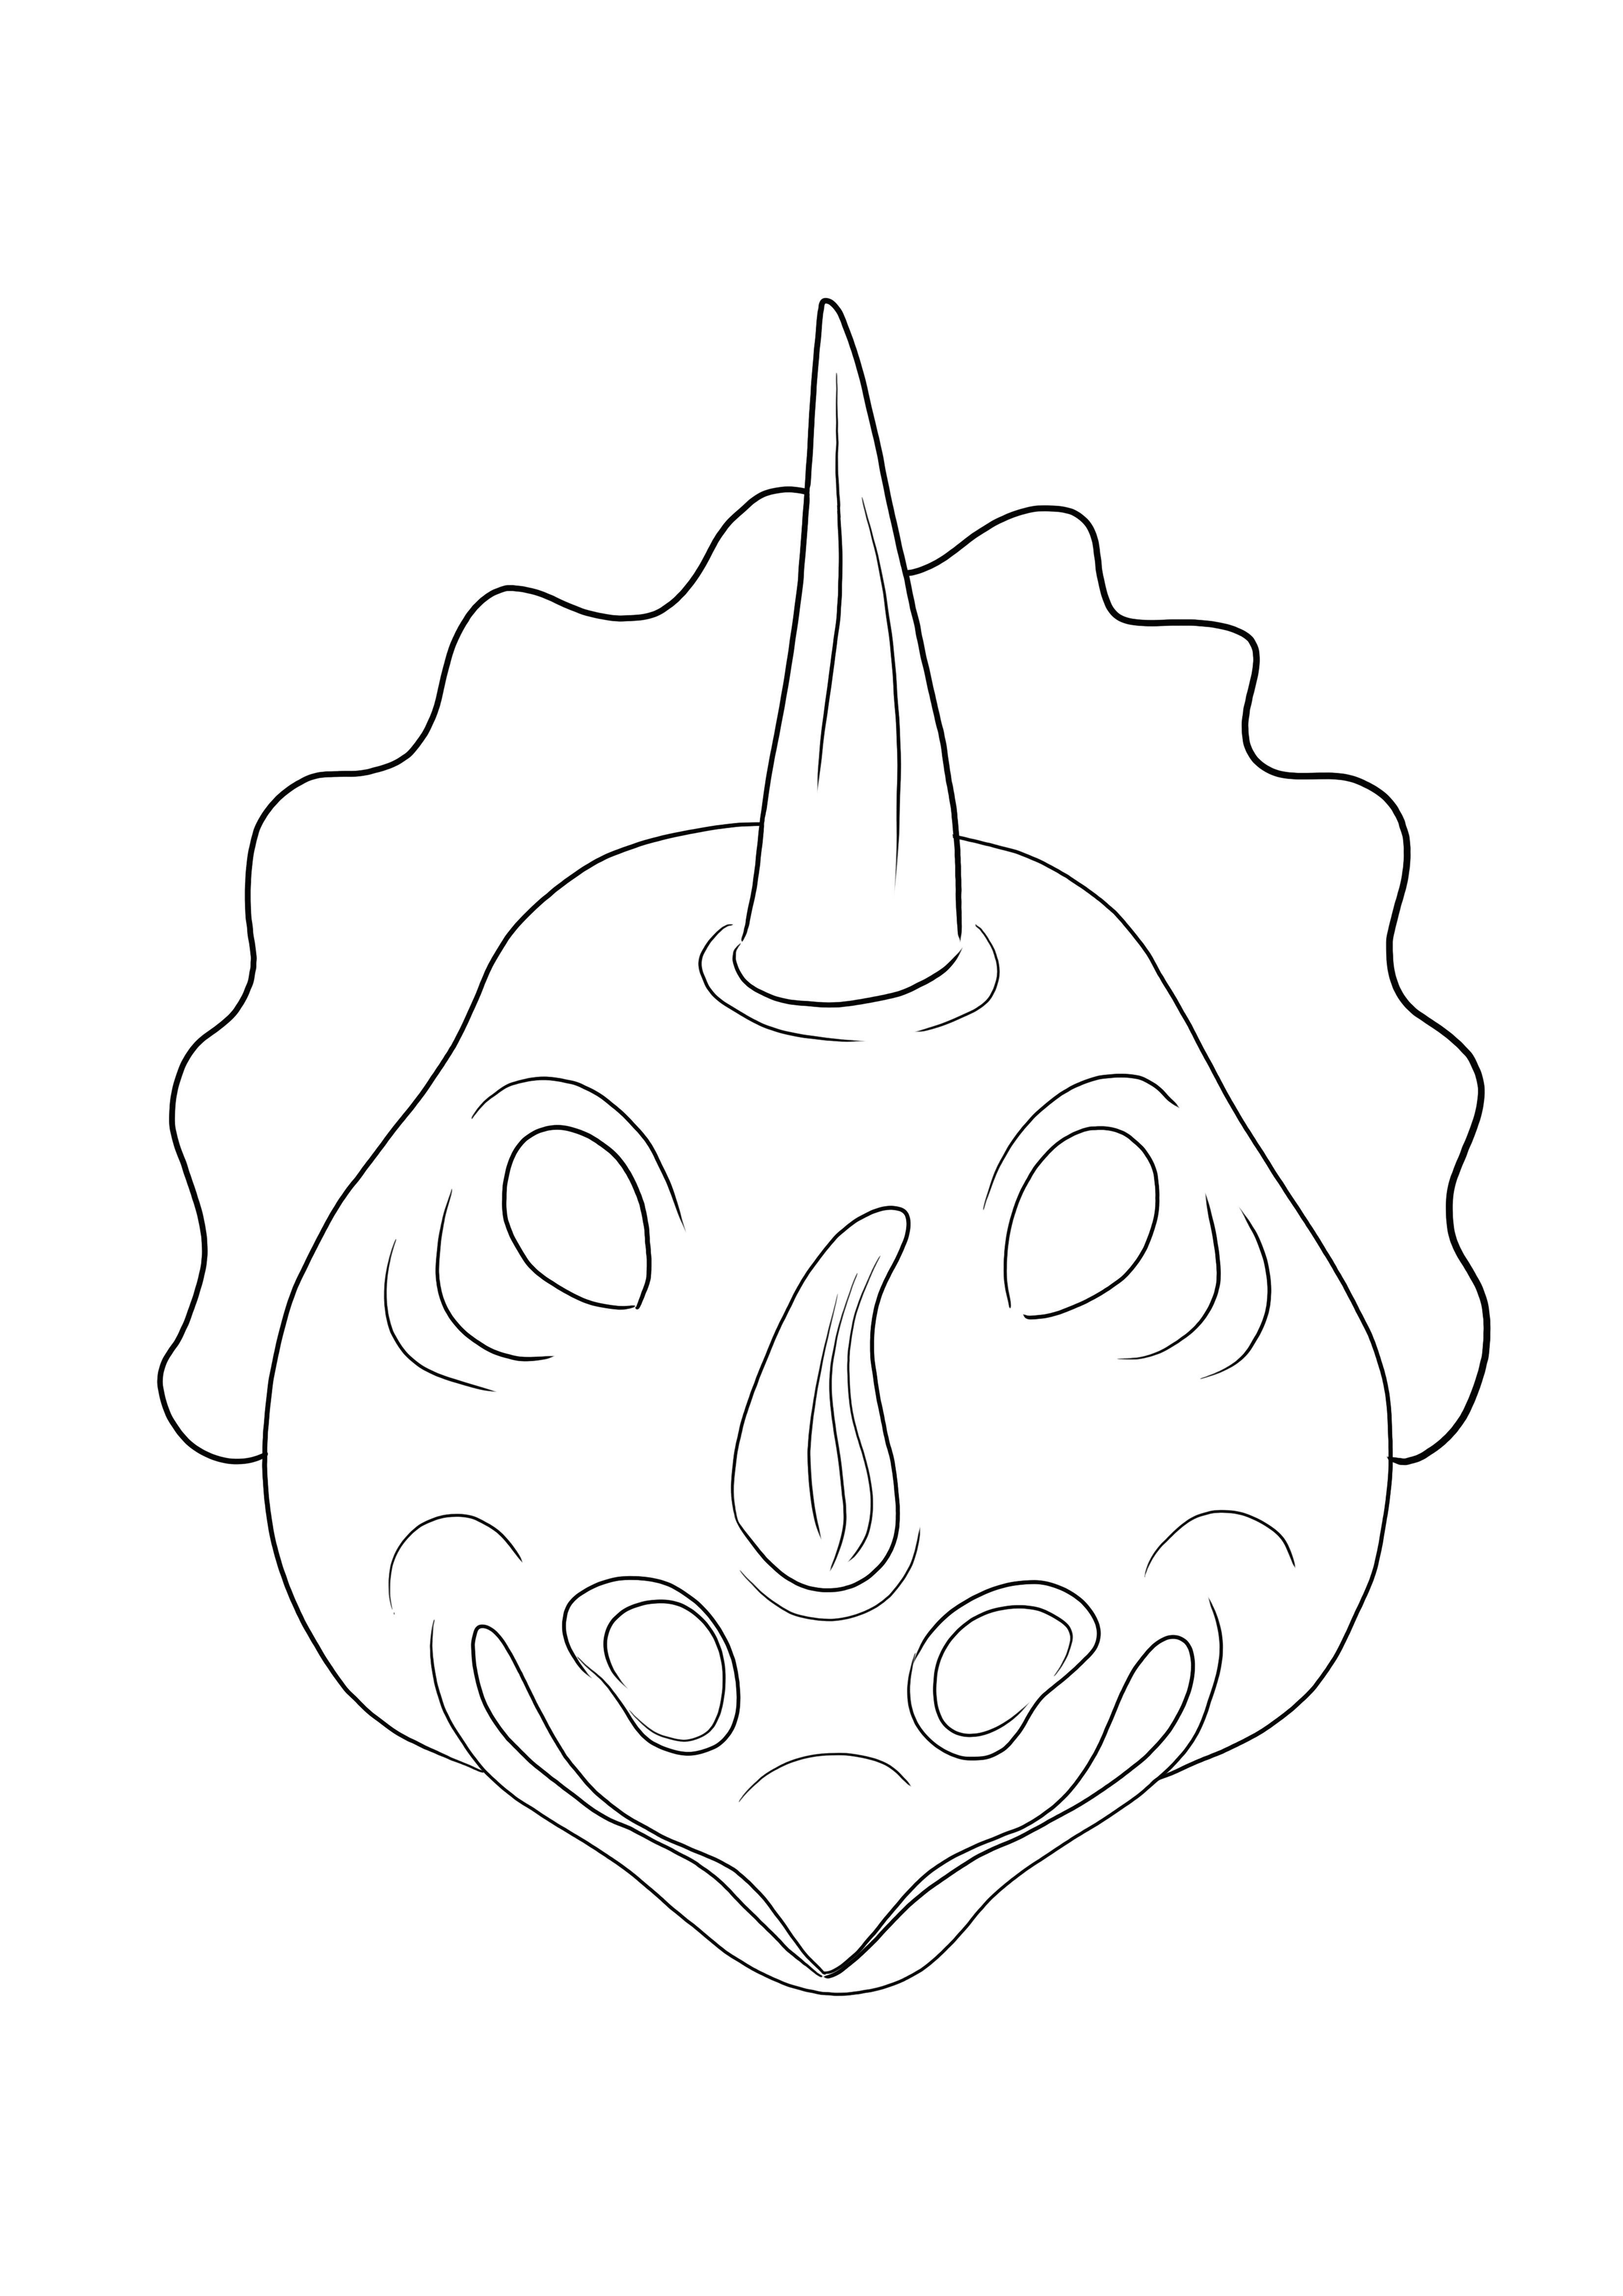 Coloración simple de la Máscara Triceratops gratis para descargar o imprimir